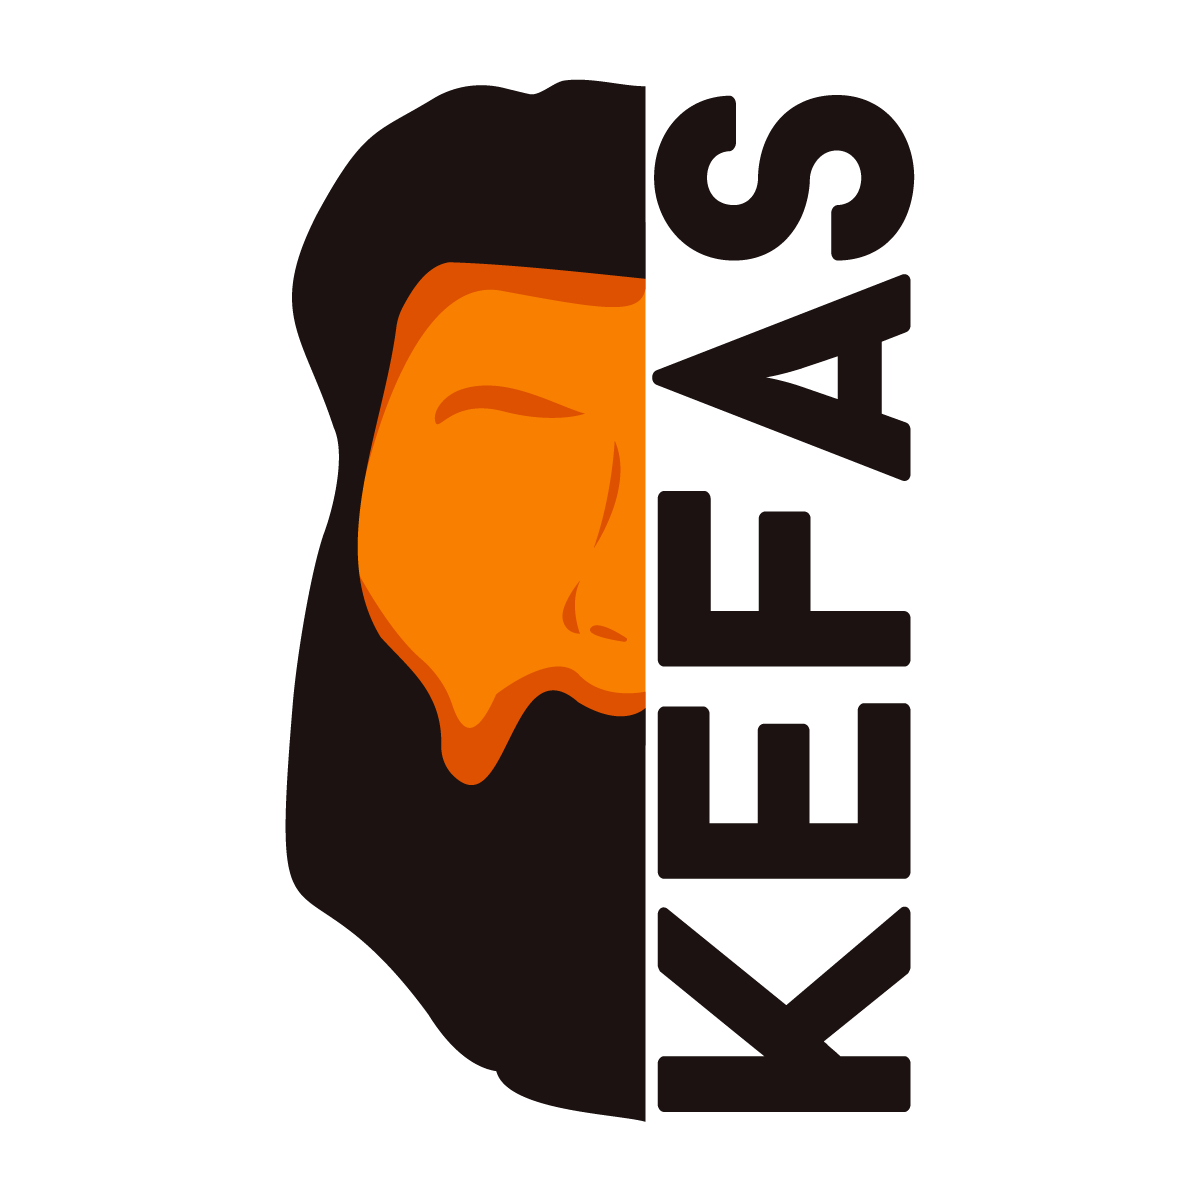 Kefas logo